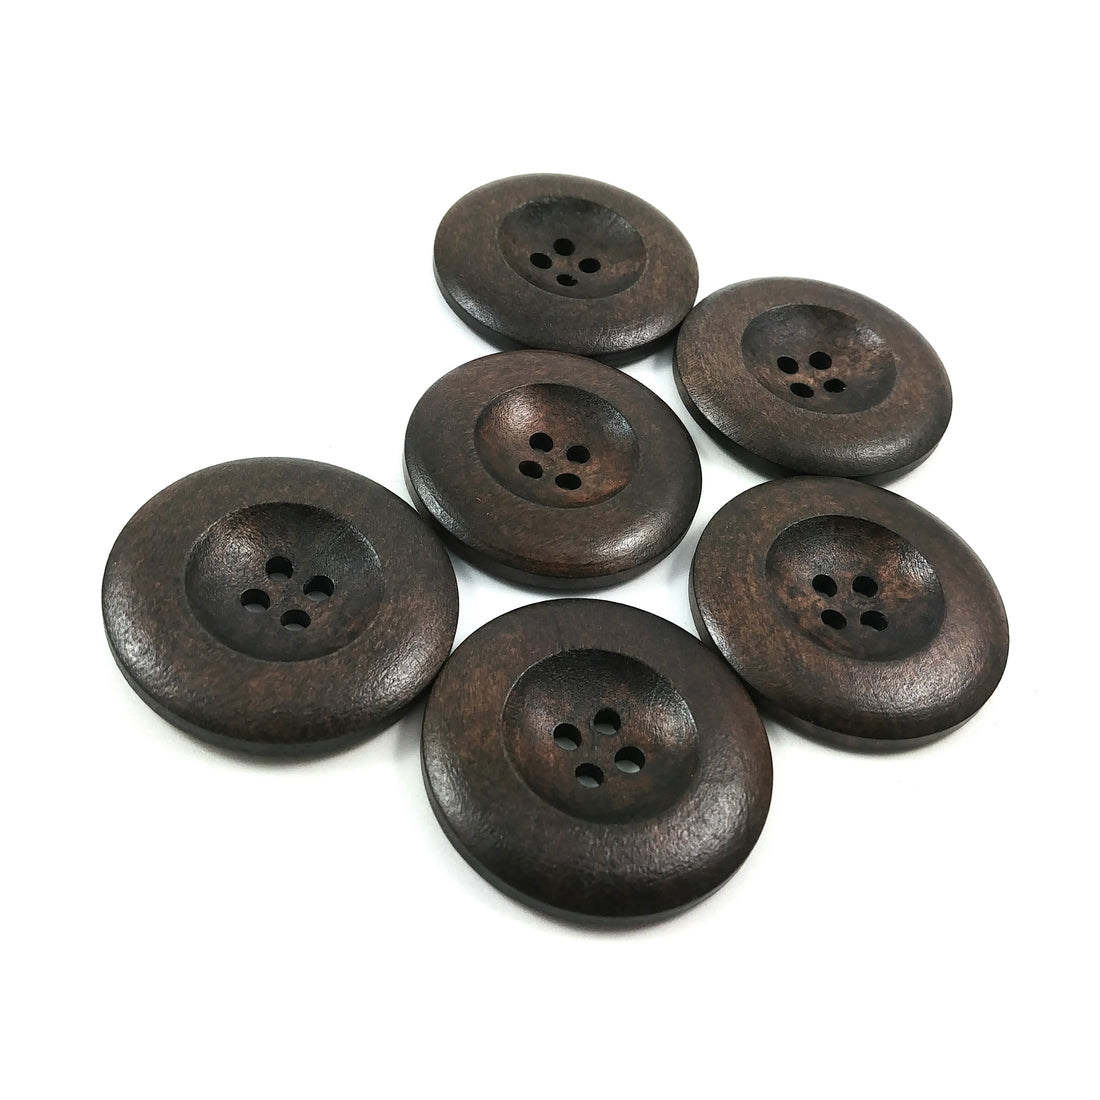 Bouton de bois brun chocolat foncé de 3.5cm - ensemble de 6 boutons en bois naturel